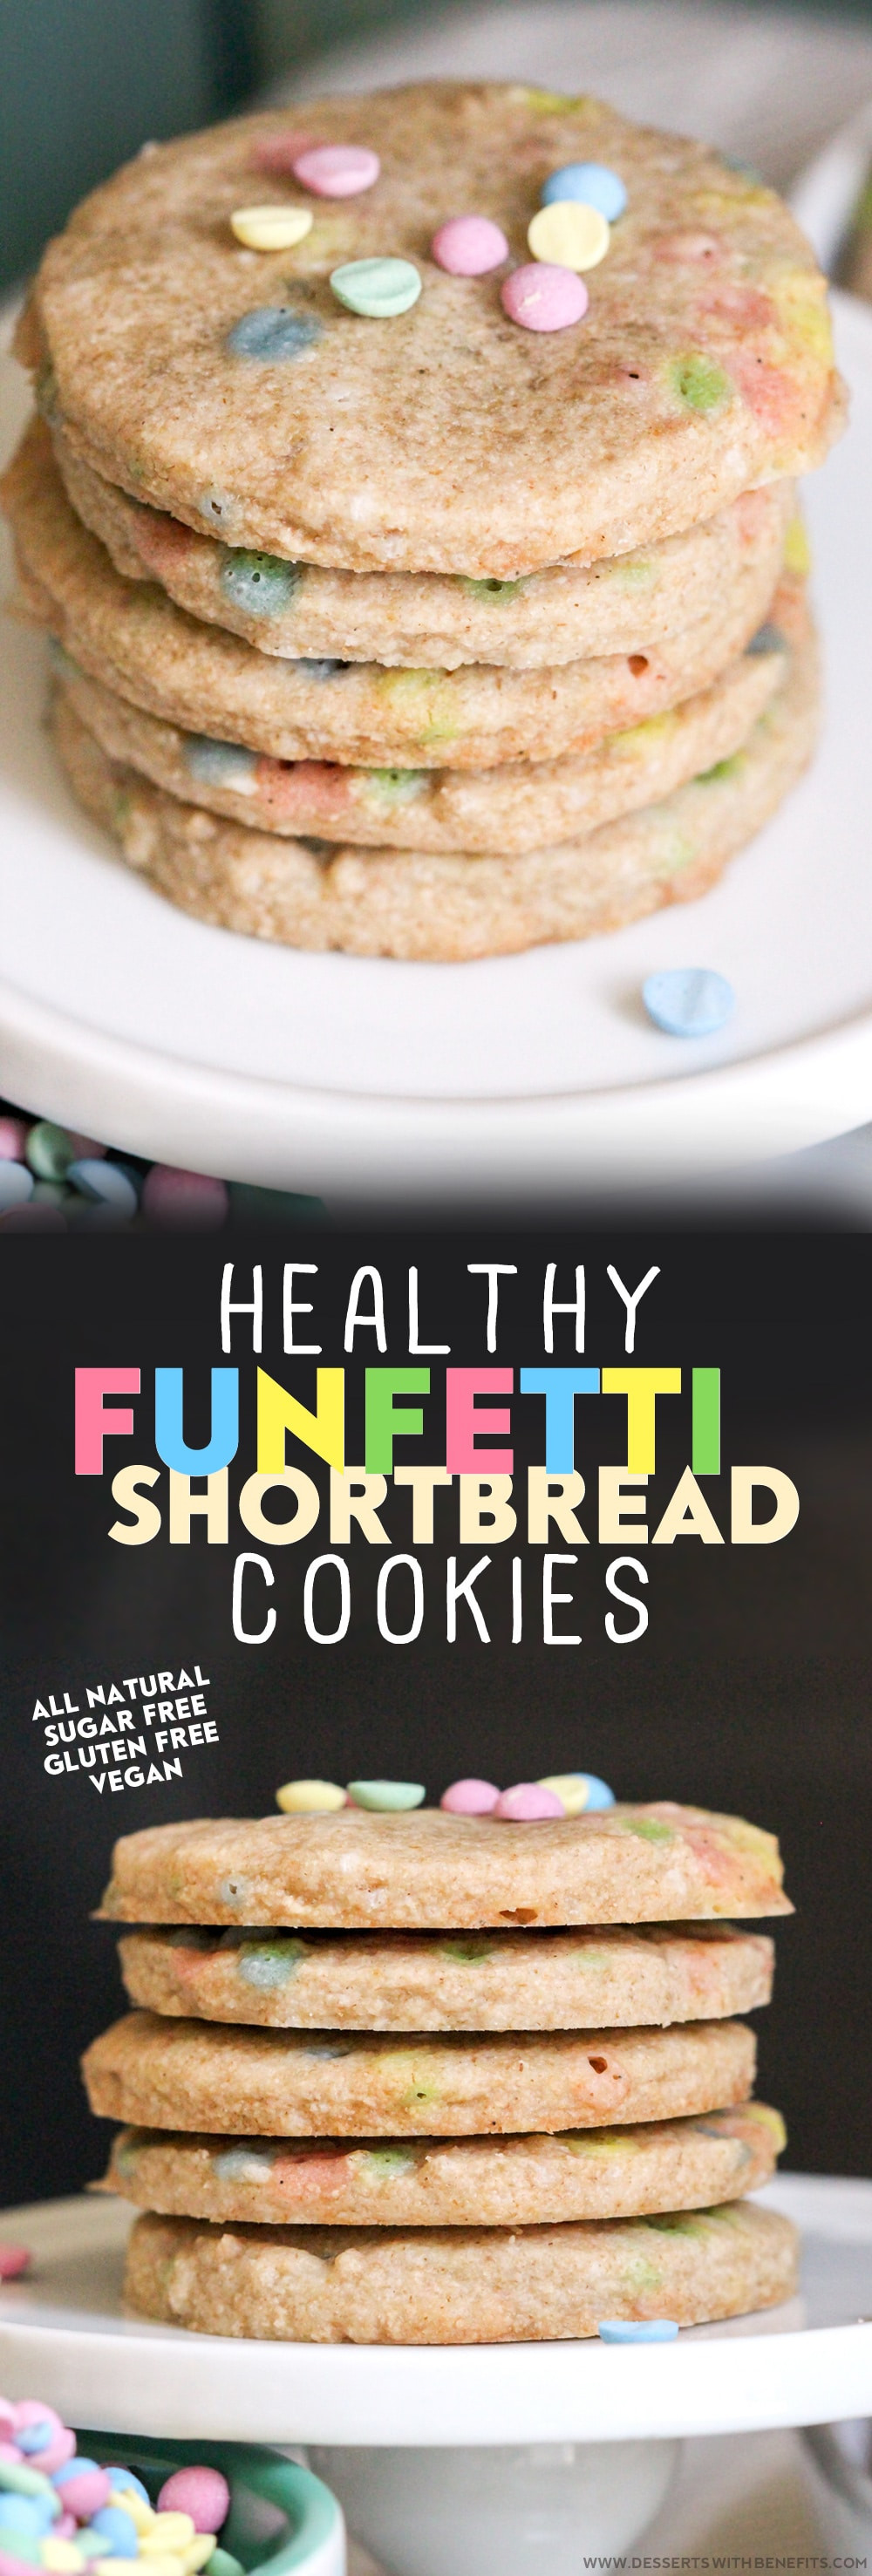 Healthy Sugar Free Cookies
 Healthy Funfetti Shortbread Cookies recipe sugar free